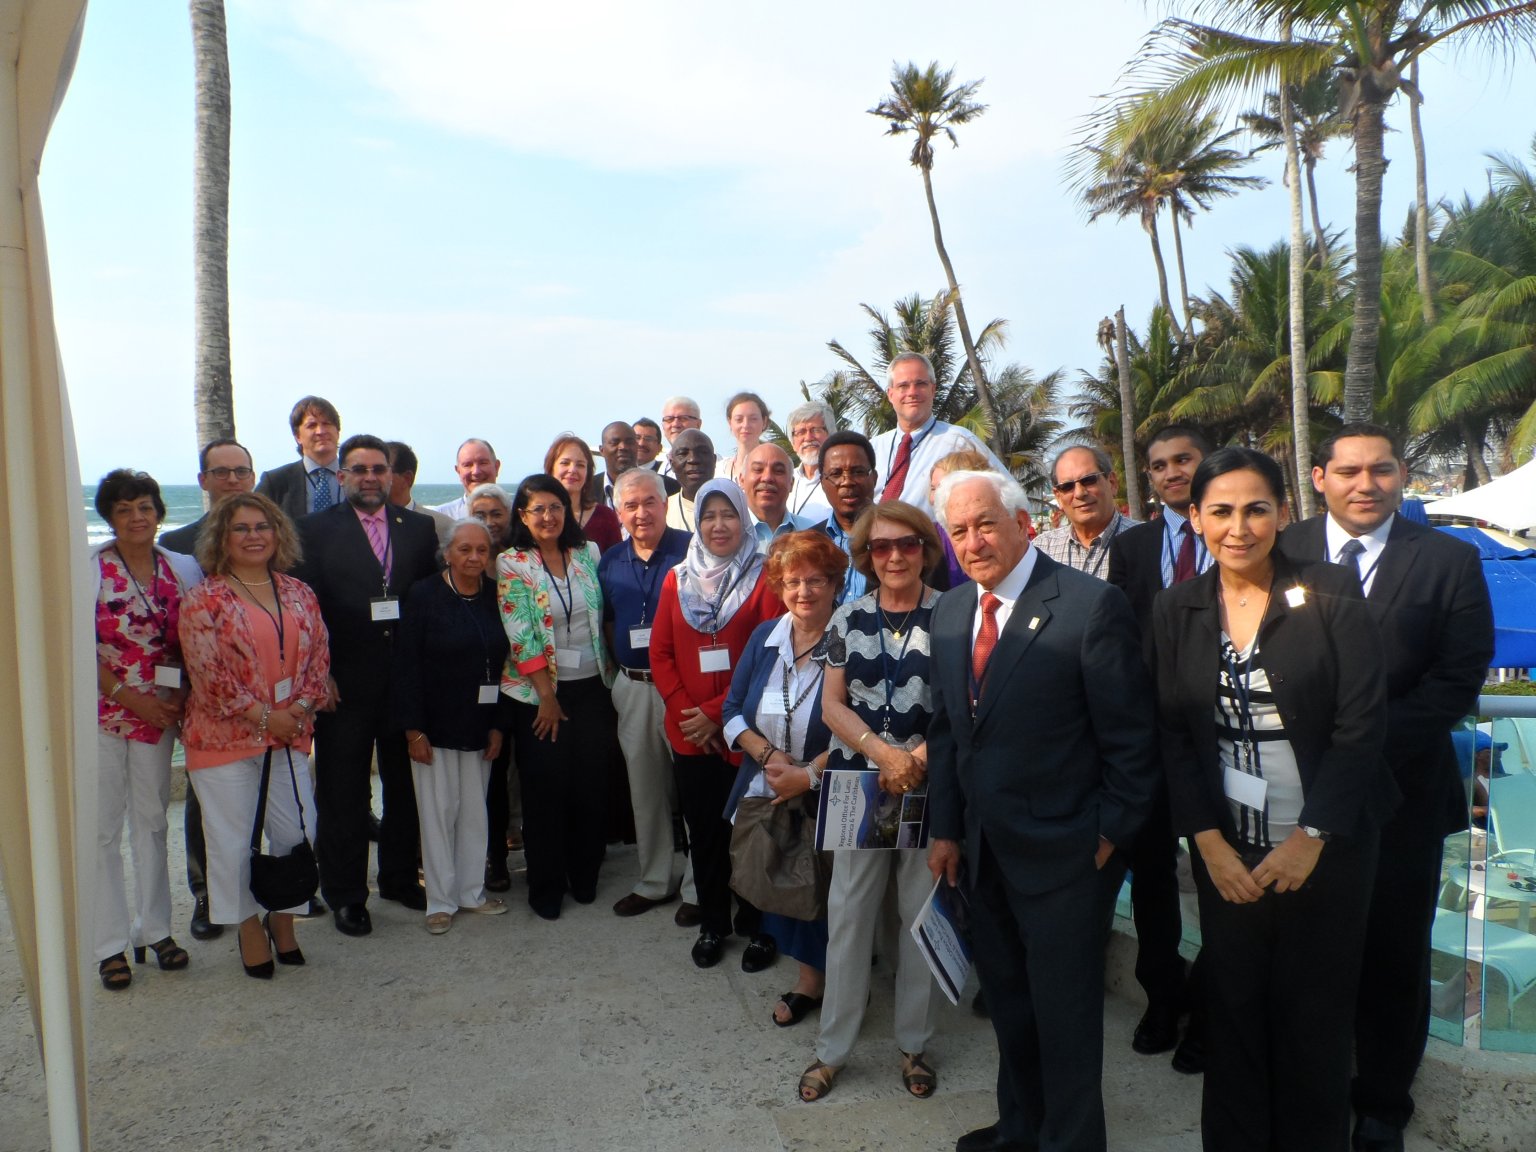 Two regional meetings held in Cartagena de Indias